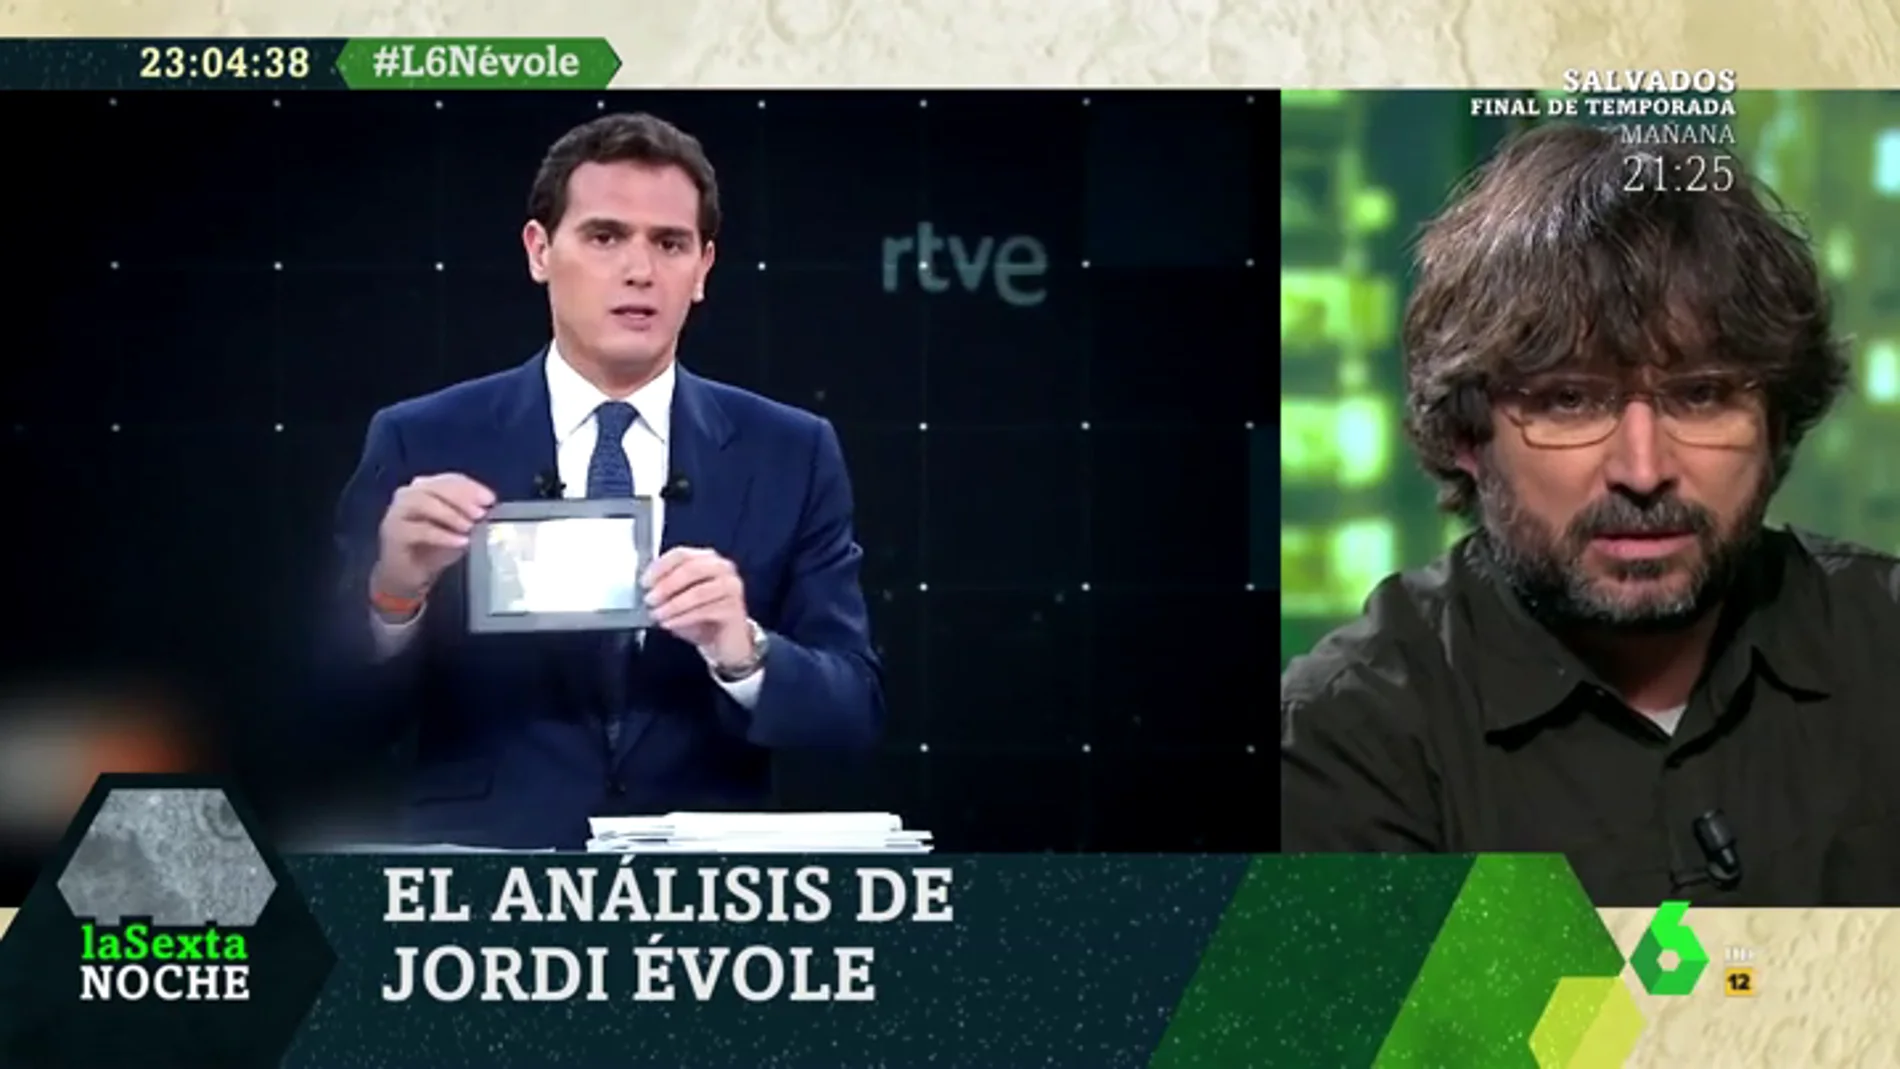 La crítica de Jordi Évole al papel de los líderes políticos en los debates: "El espectáculo me pareció penoso"